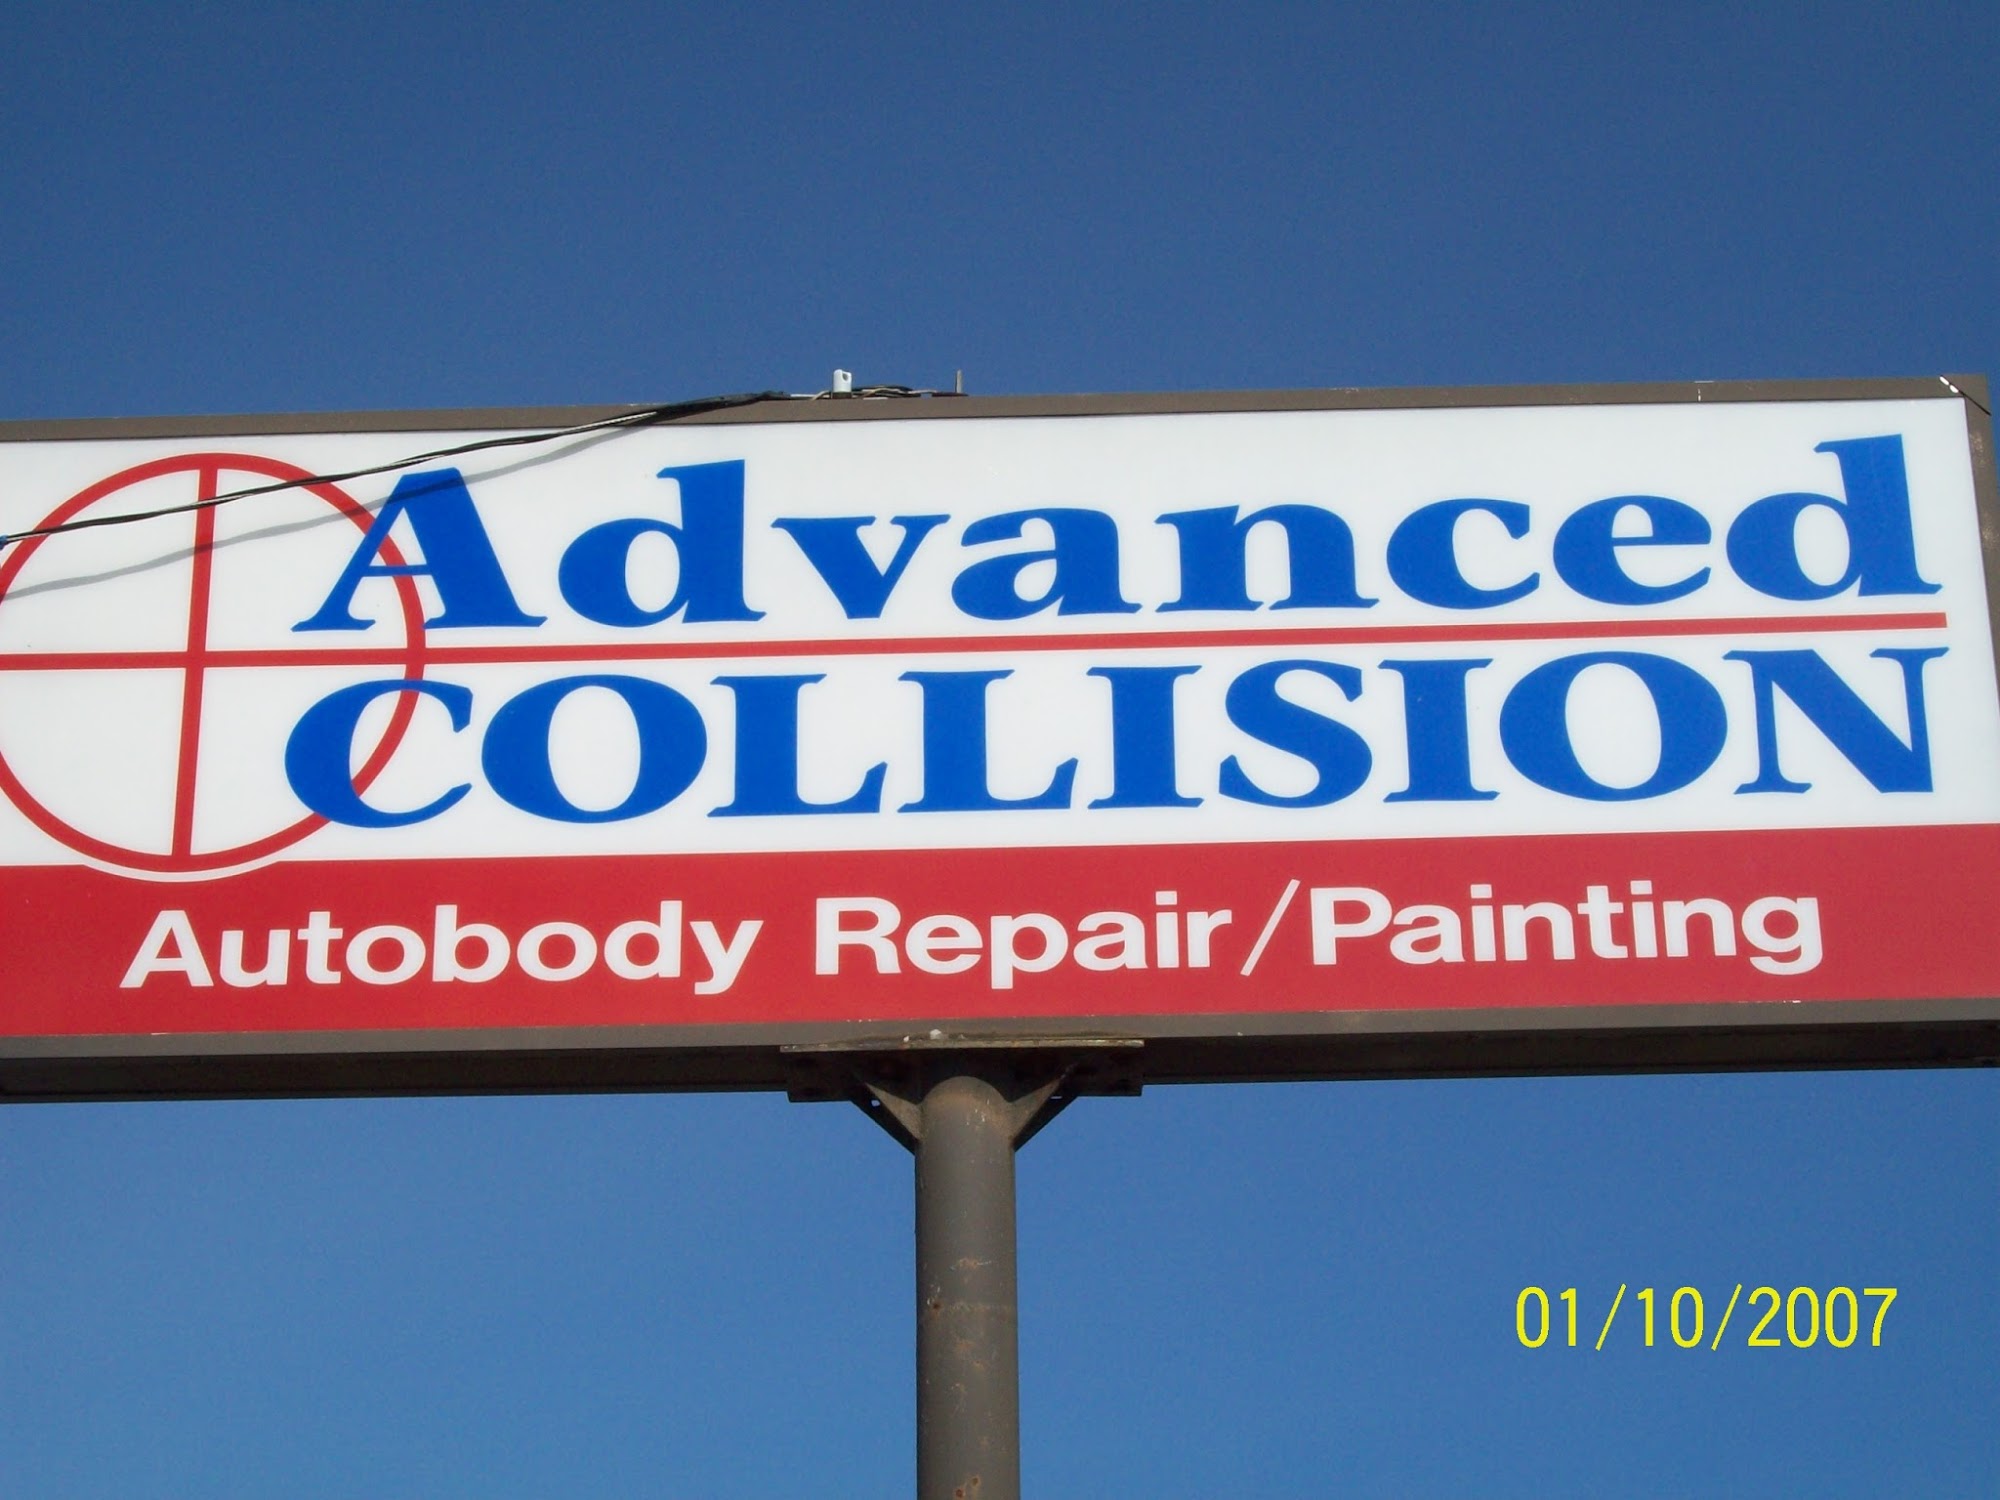 Advanced Auto Collision